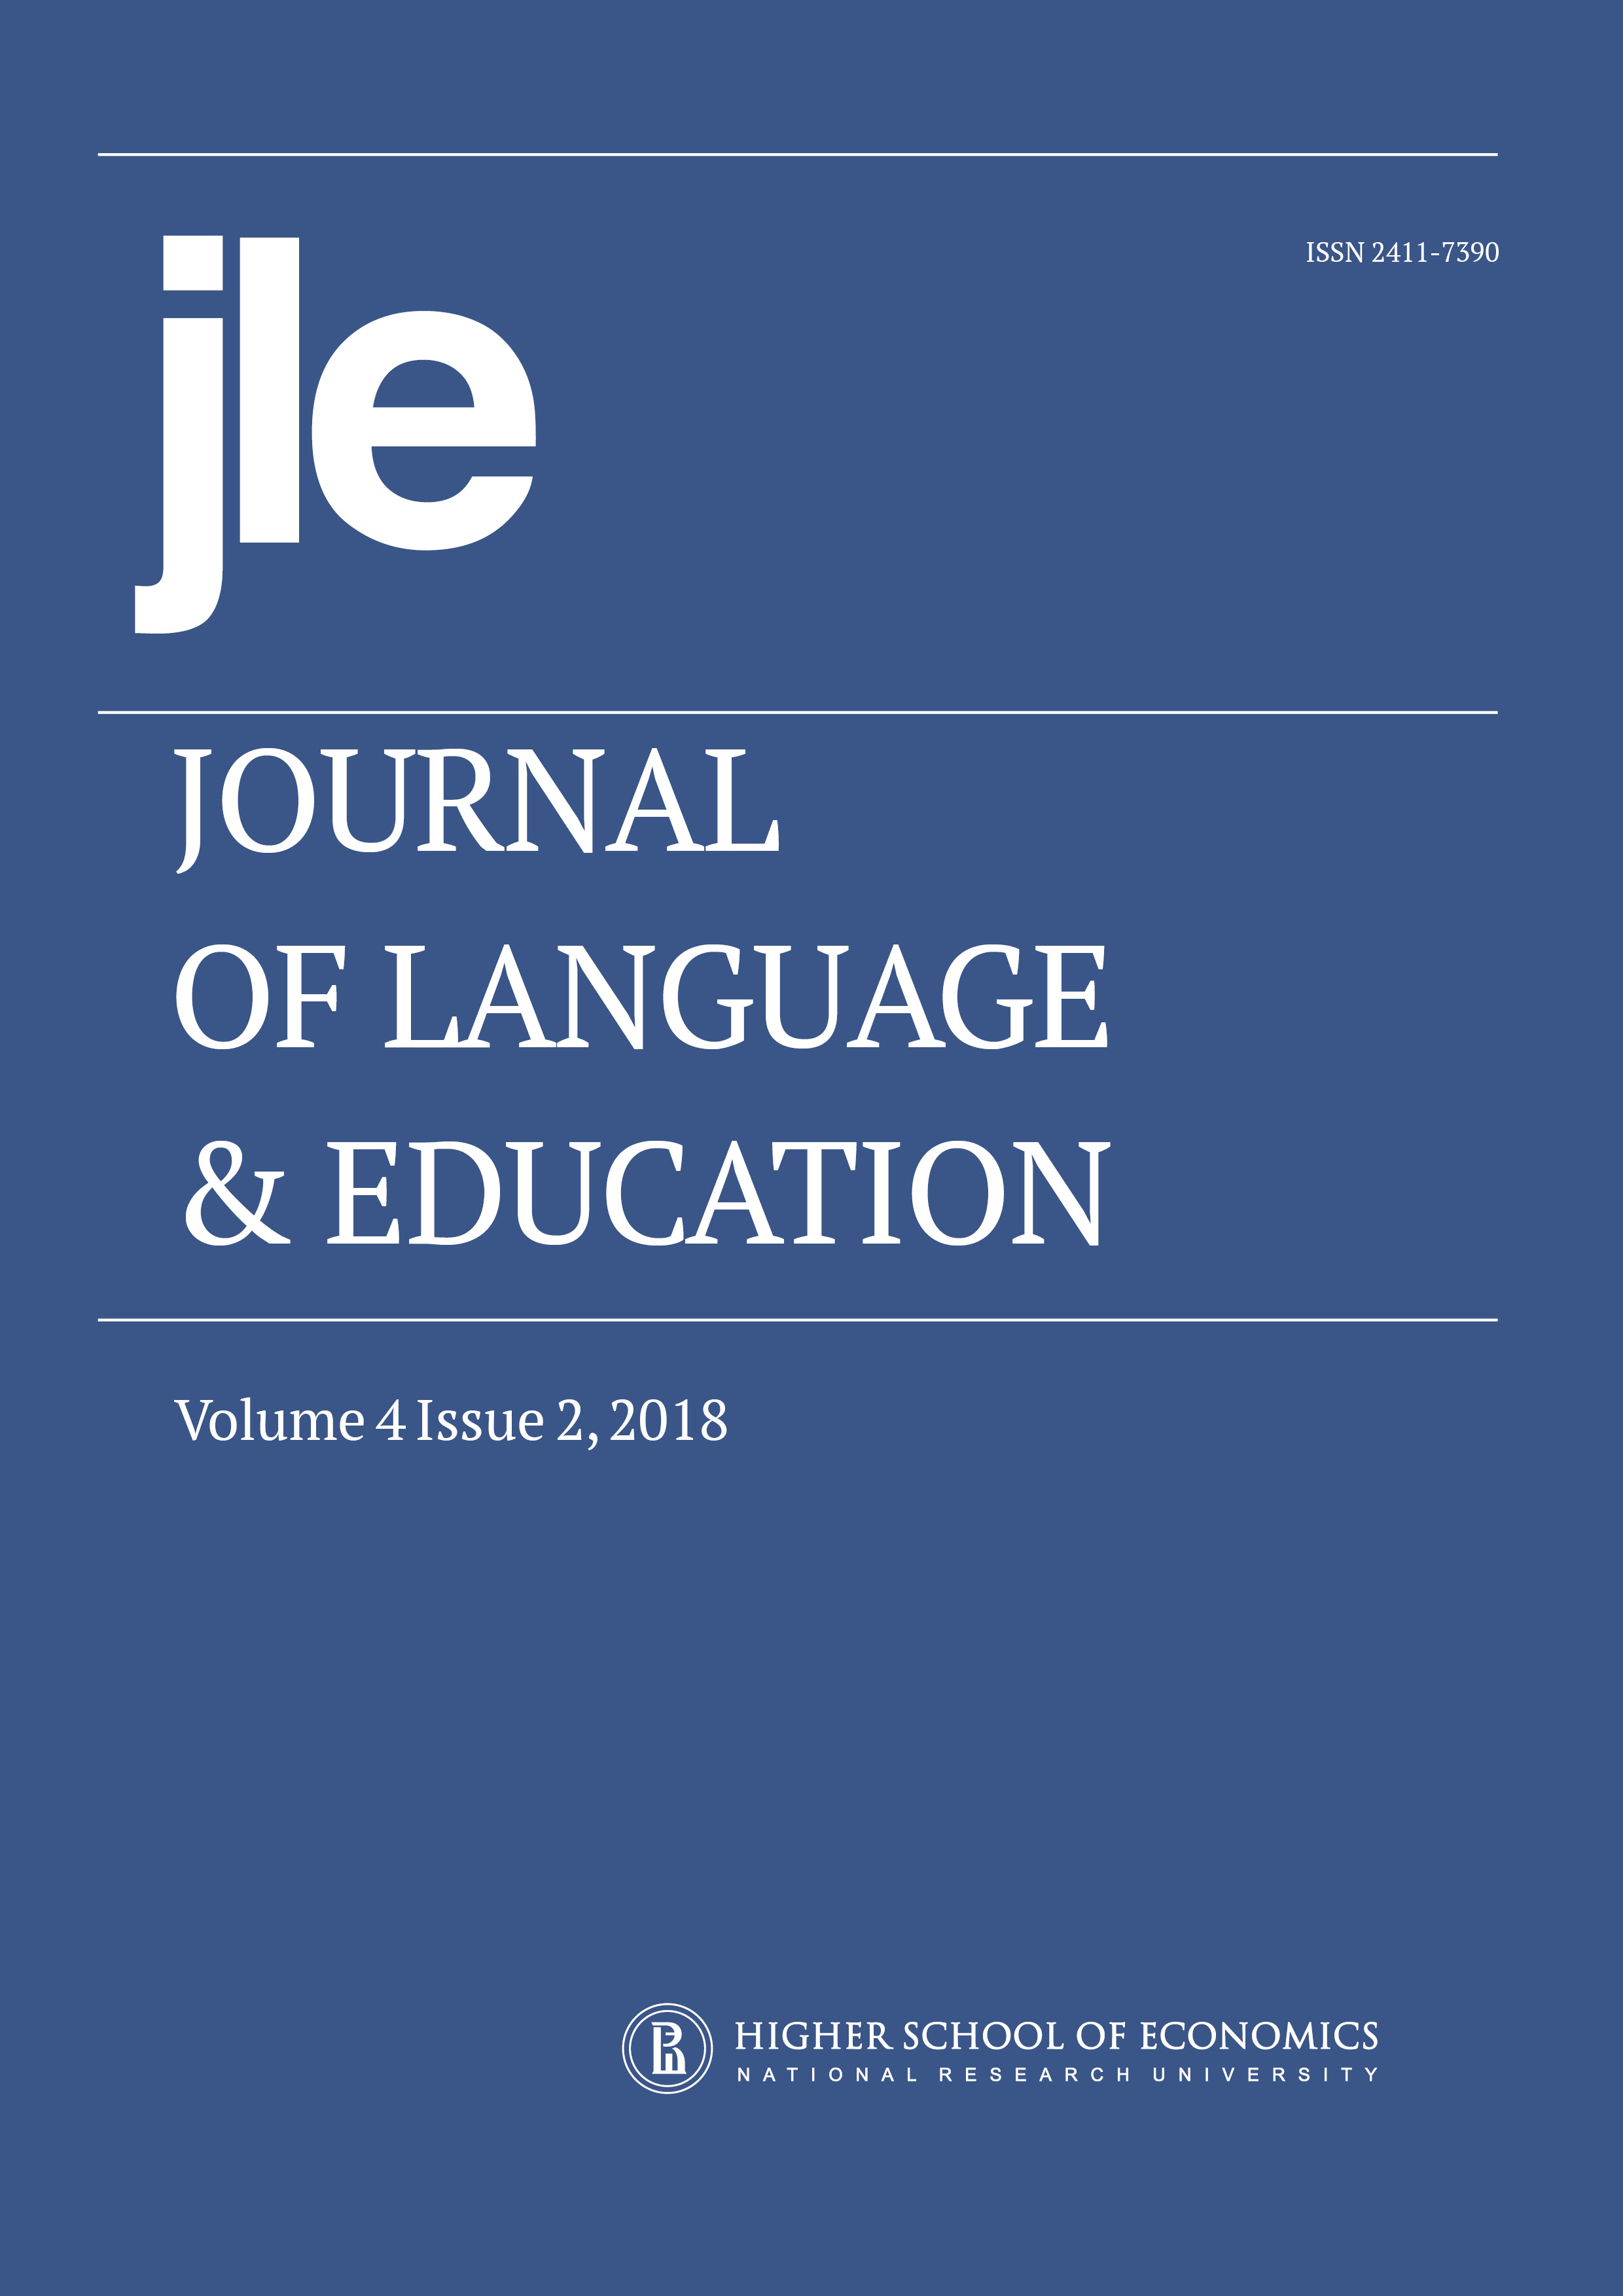 Heritage Language Journal